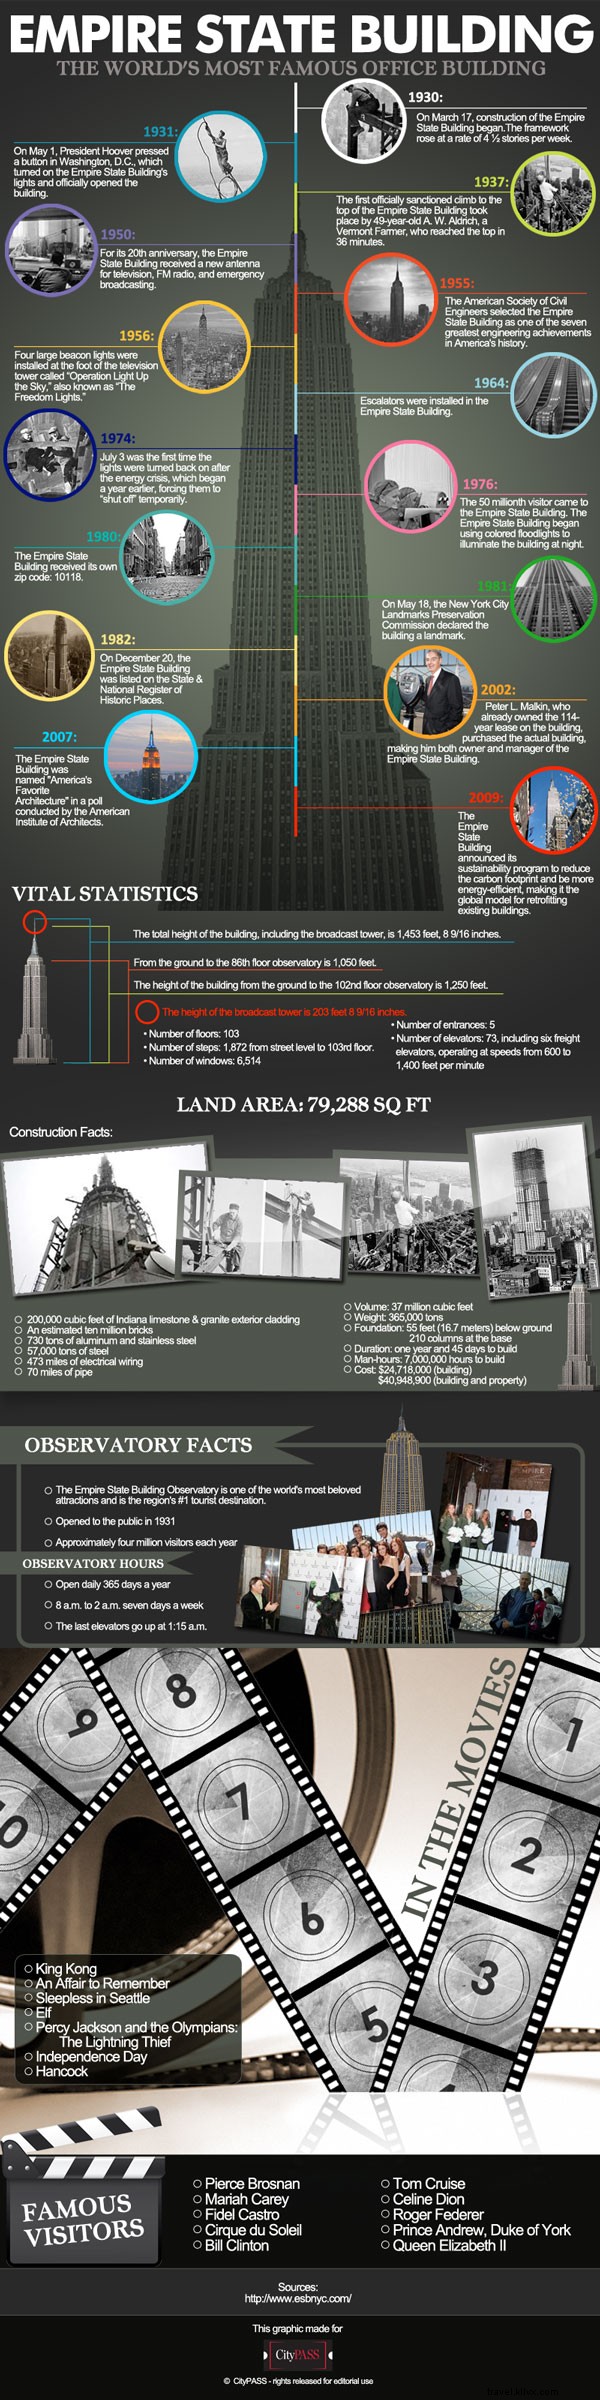 Fatos sobre o Empire State Building - O prédio comercial mais famoso do mundo 